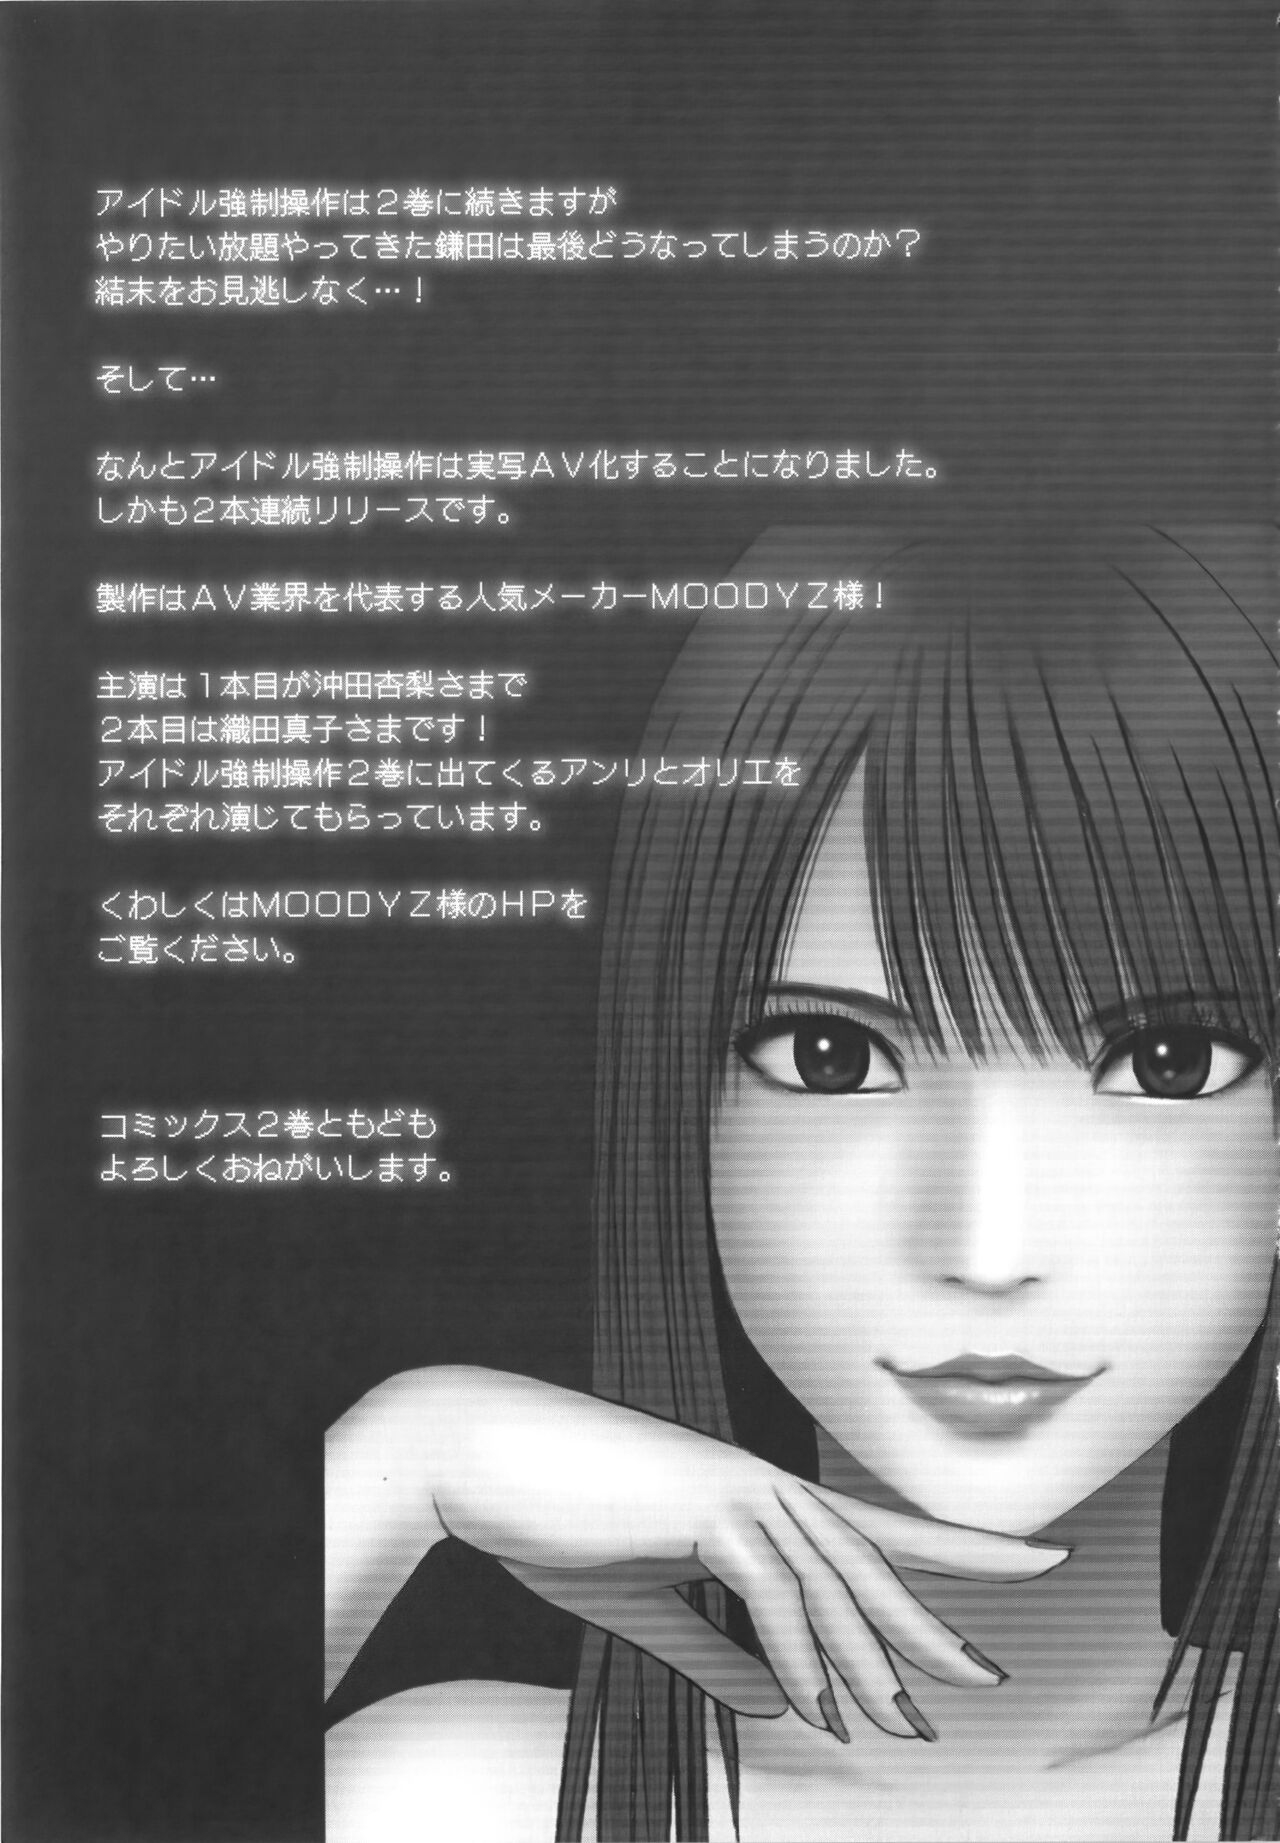 [Crimson] Idol Kyousei Sousa Vol.1 Smartphone de Meireishita Koto ga Genjitsu ni [Complete Edition] 270